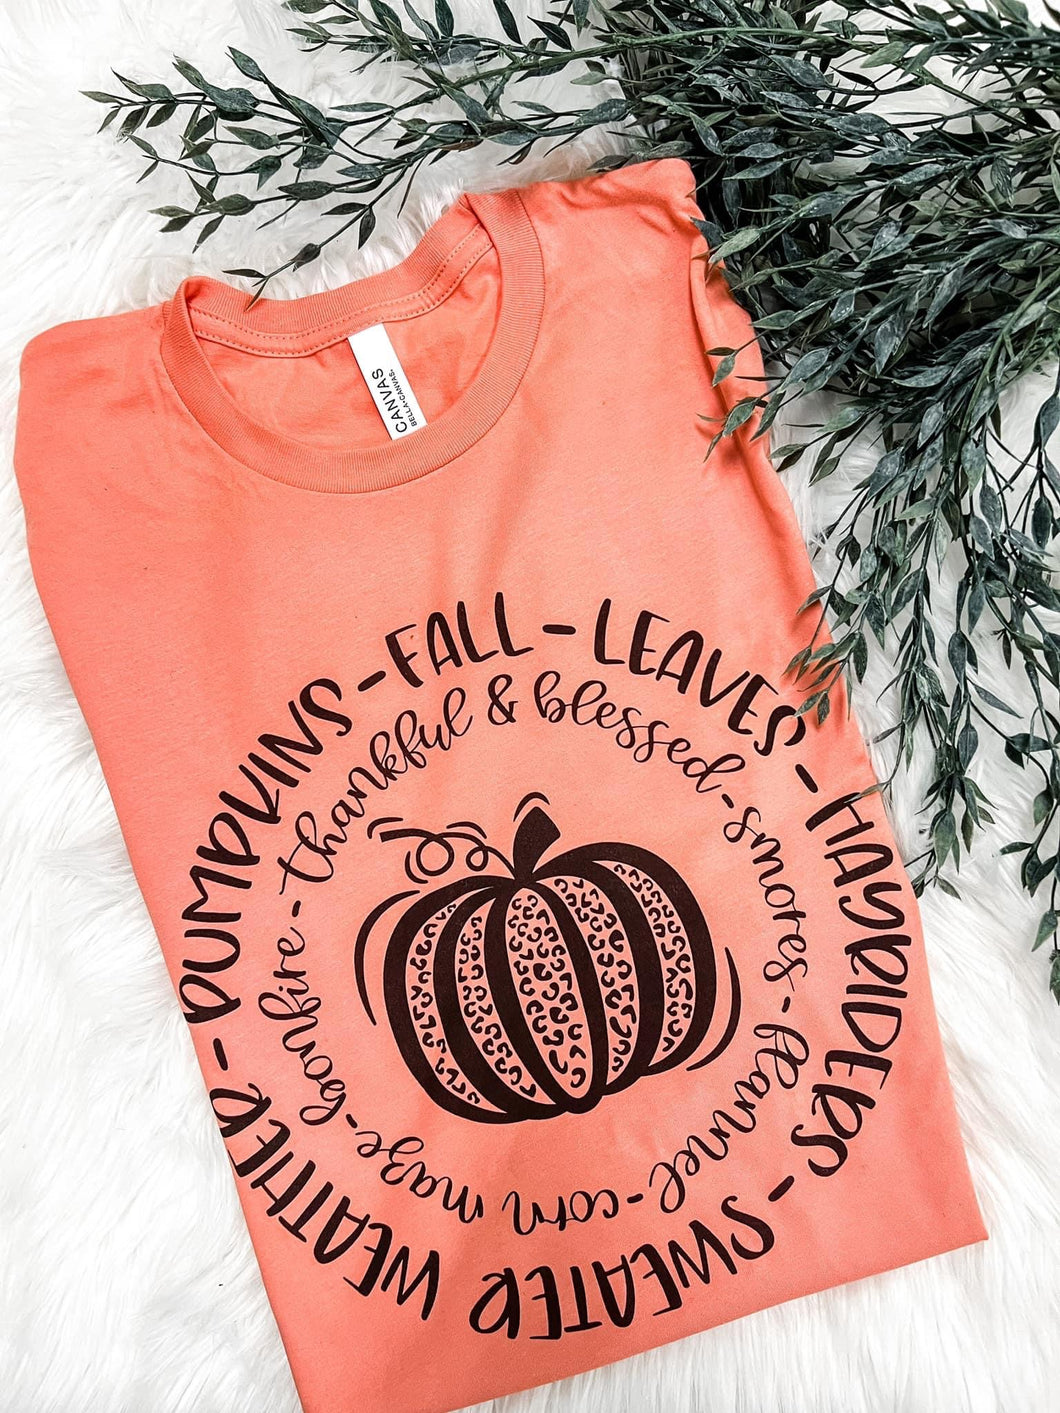 Fall things full color pumpkin